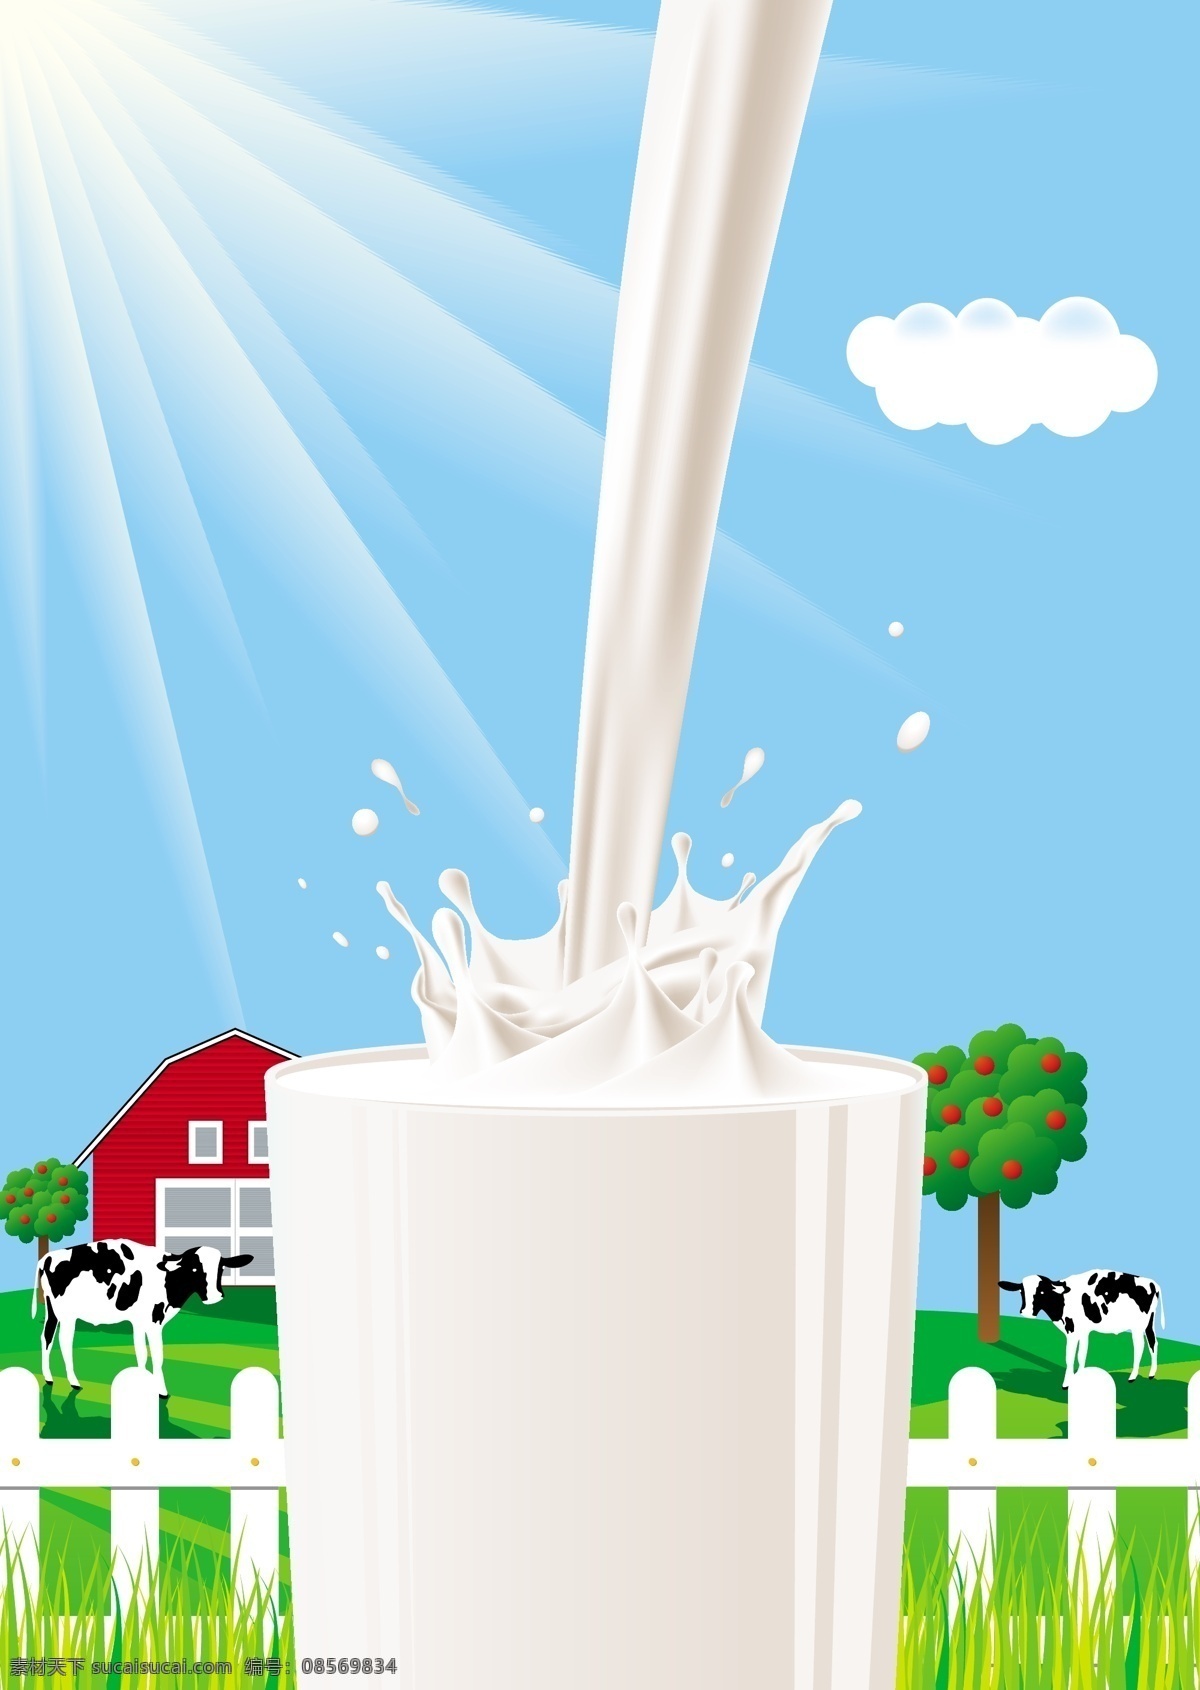 牛奶 矢量图 eps格式 房子 果树 卡通 奶牛 农场 鲜奶 栅栏 新鲜 矢量 海报 含 预览 图 其他矢量图